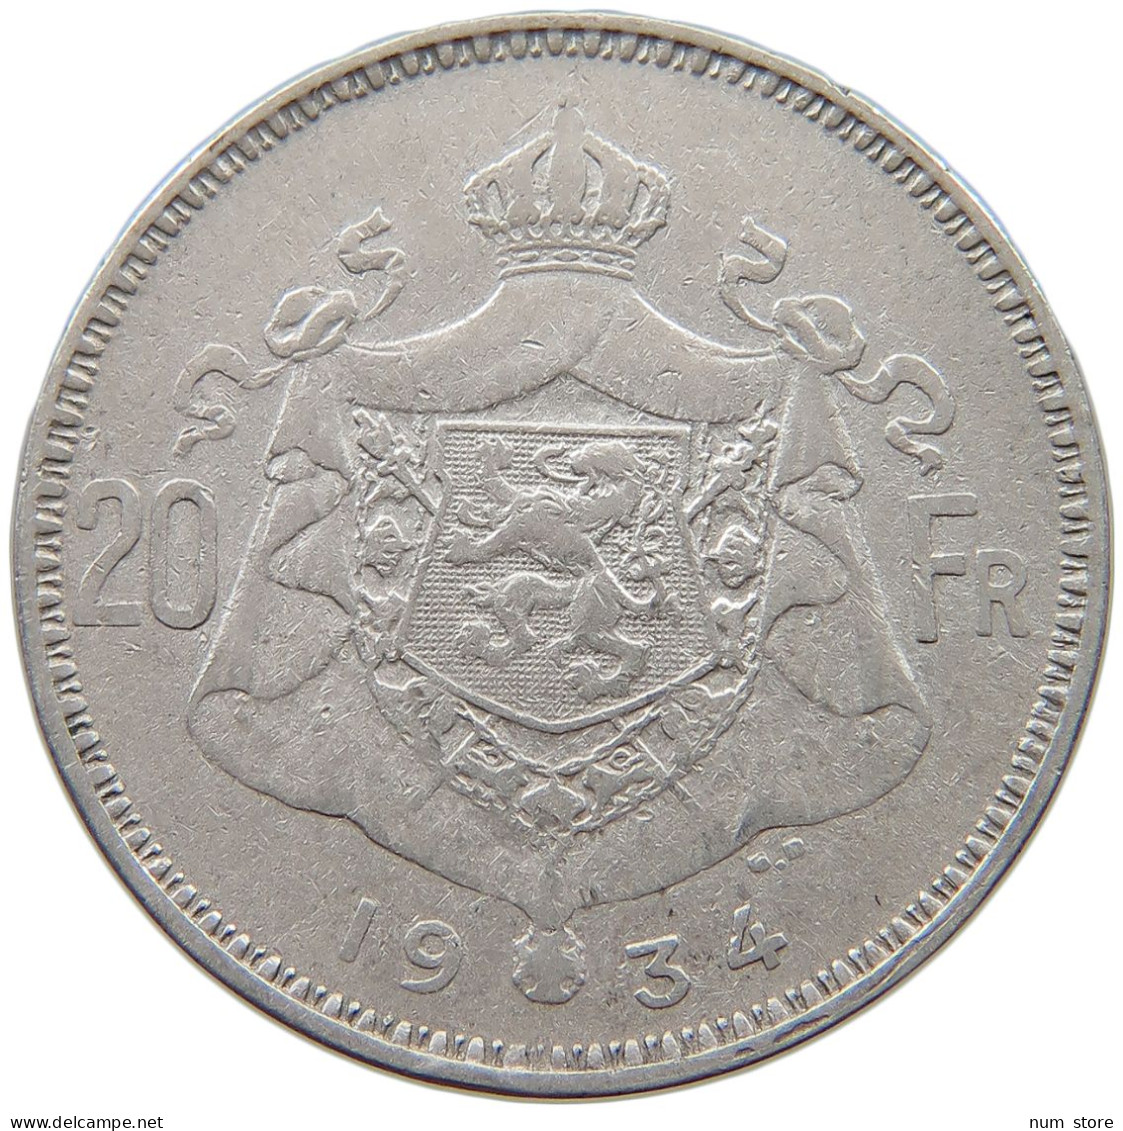 BELGIUM 20 FRANCS 1934 Albert I. 1909-1934 #s074 0387 - 20 Francs & 4 Belgas